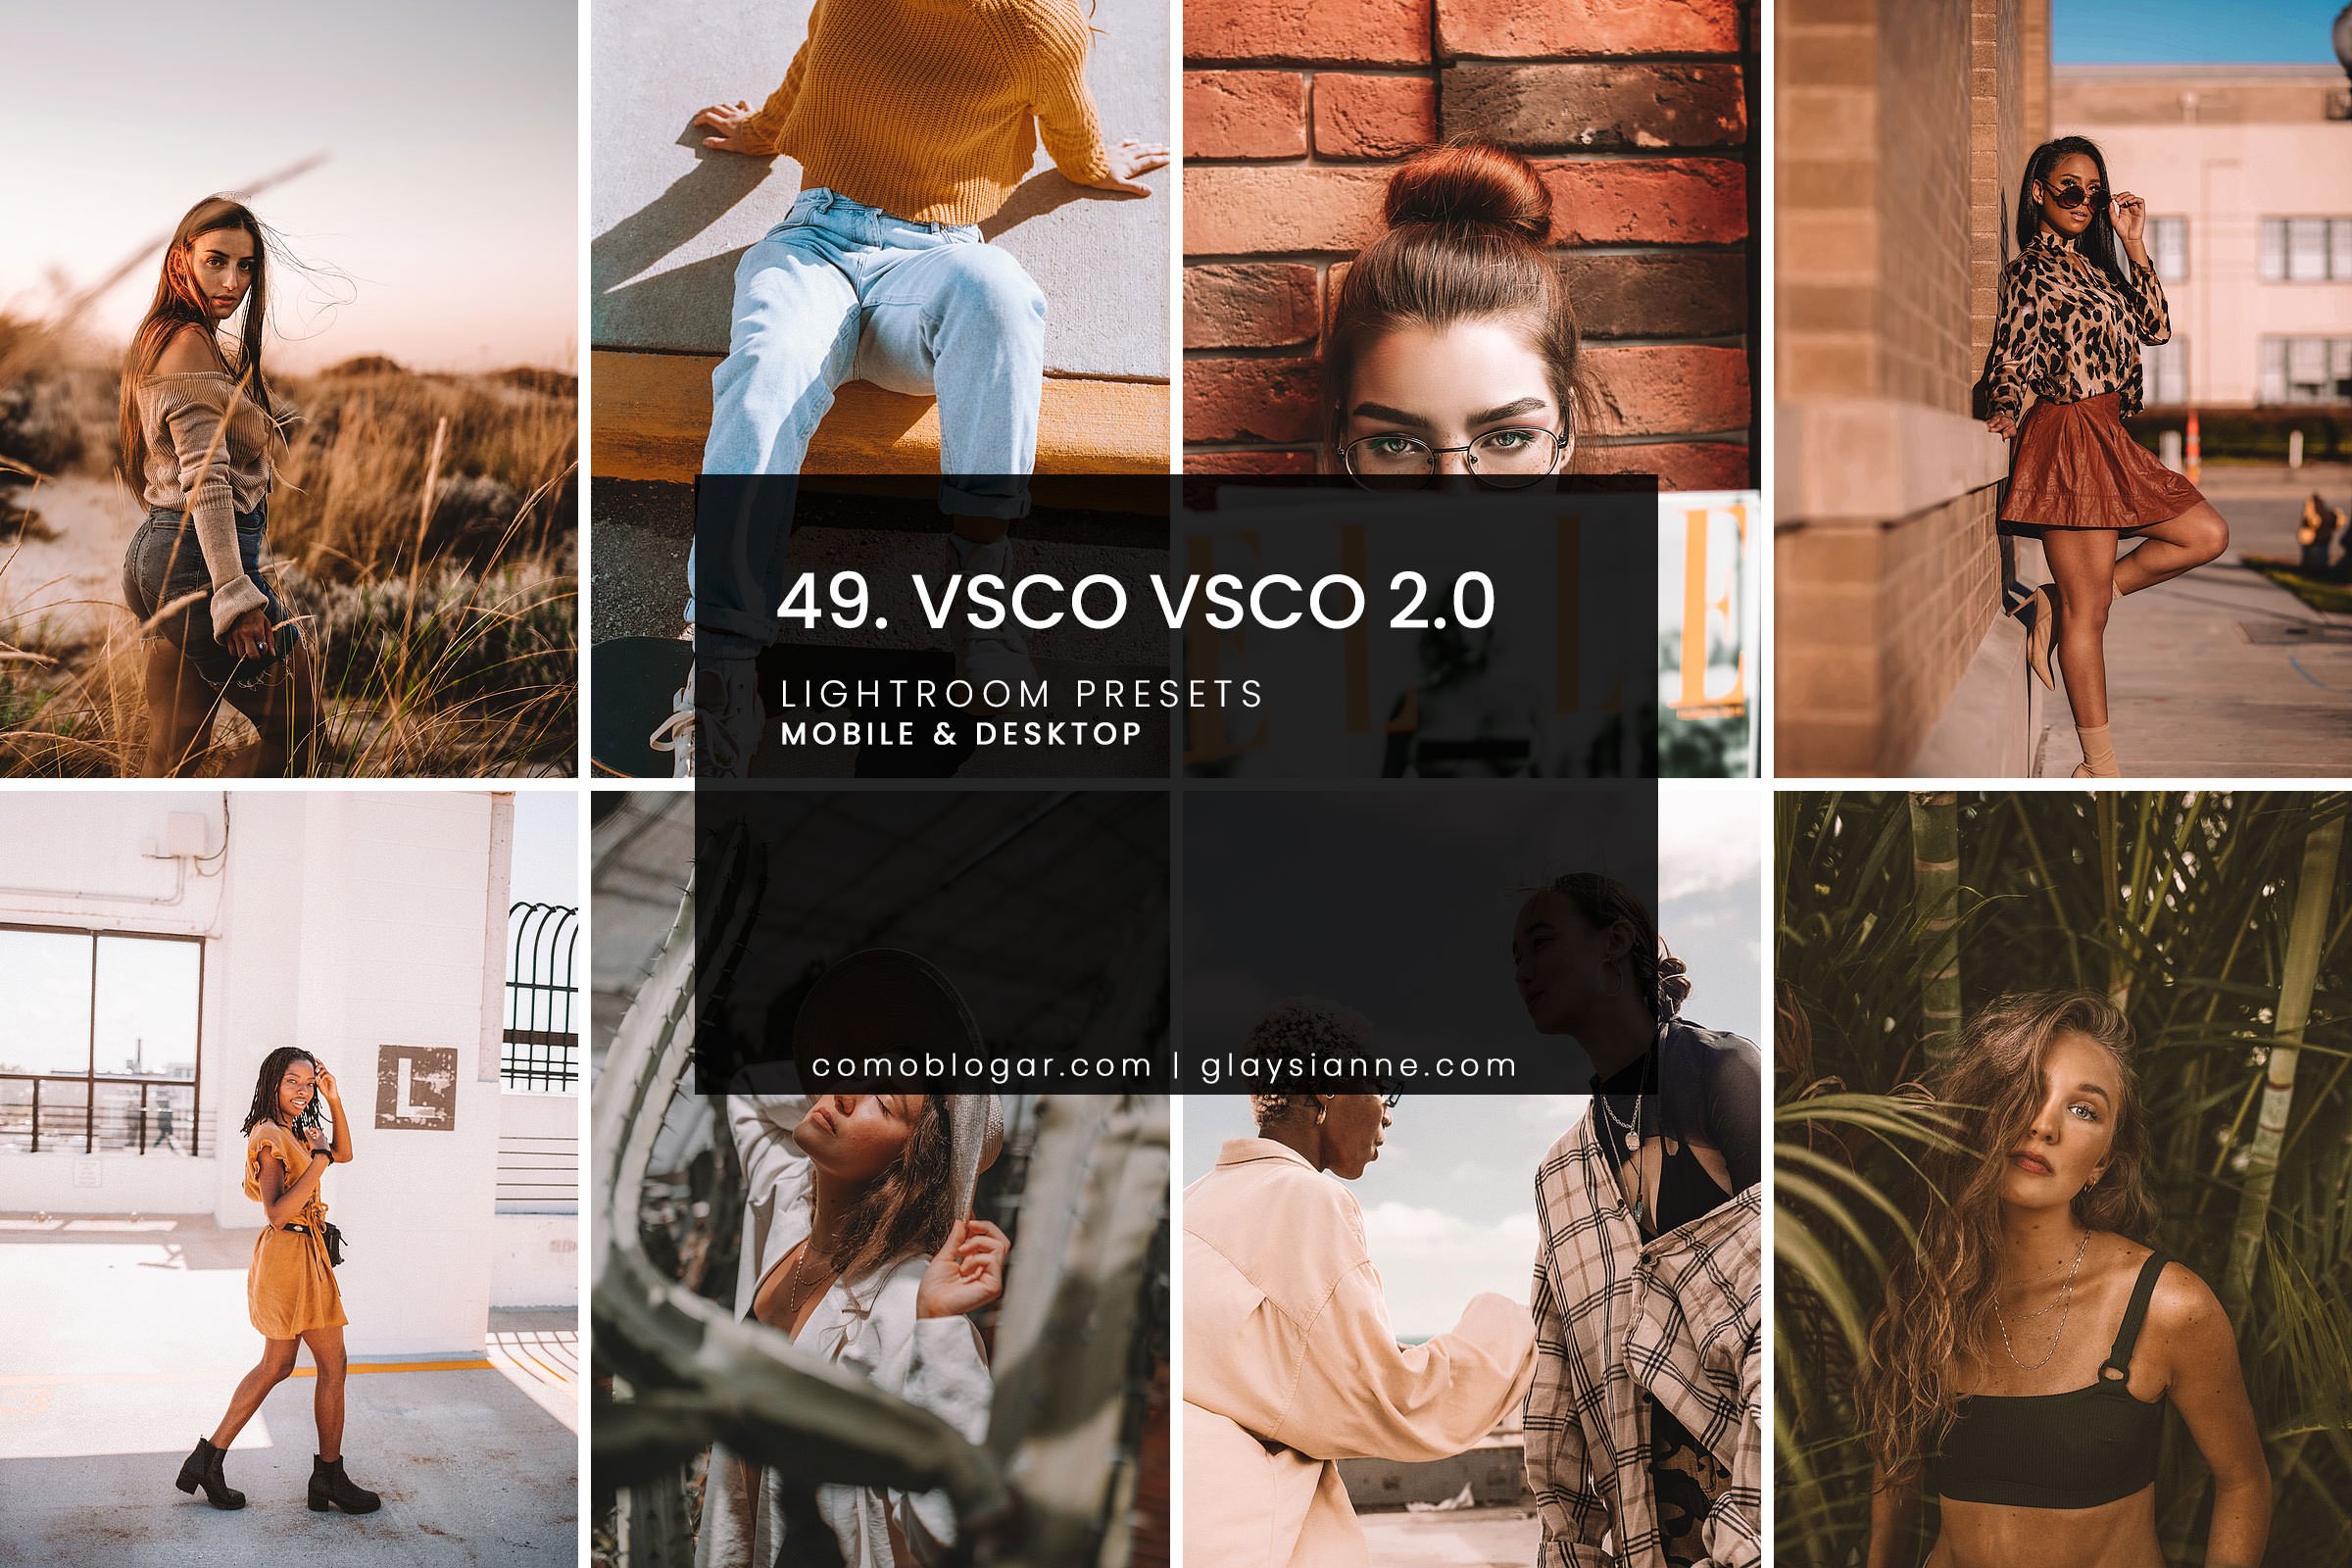 49. VSCO VSCO 2.0cover image.